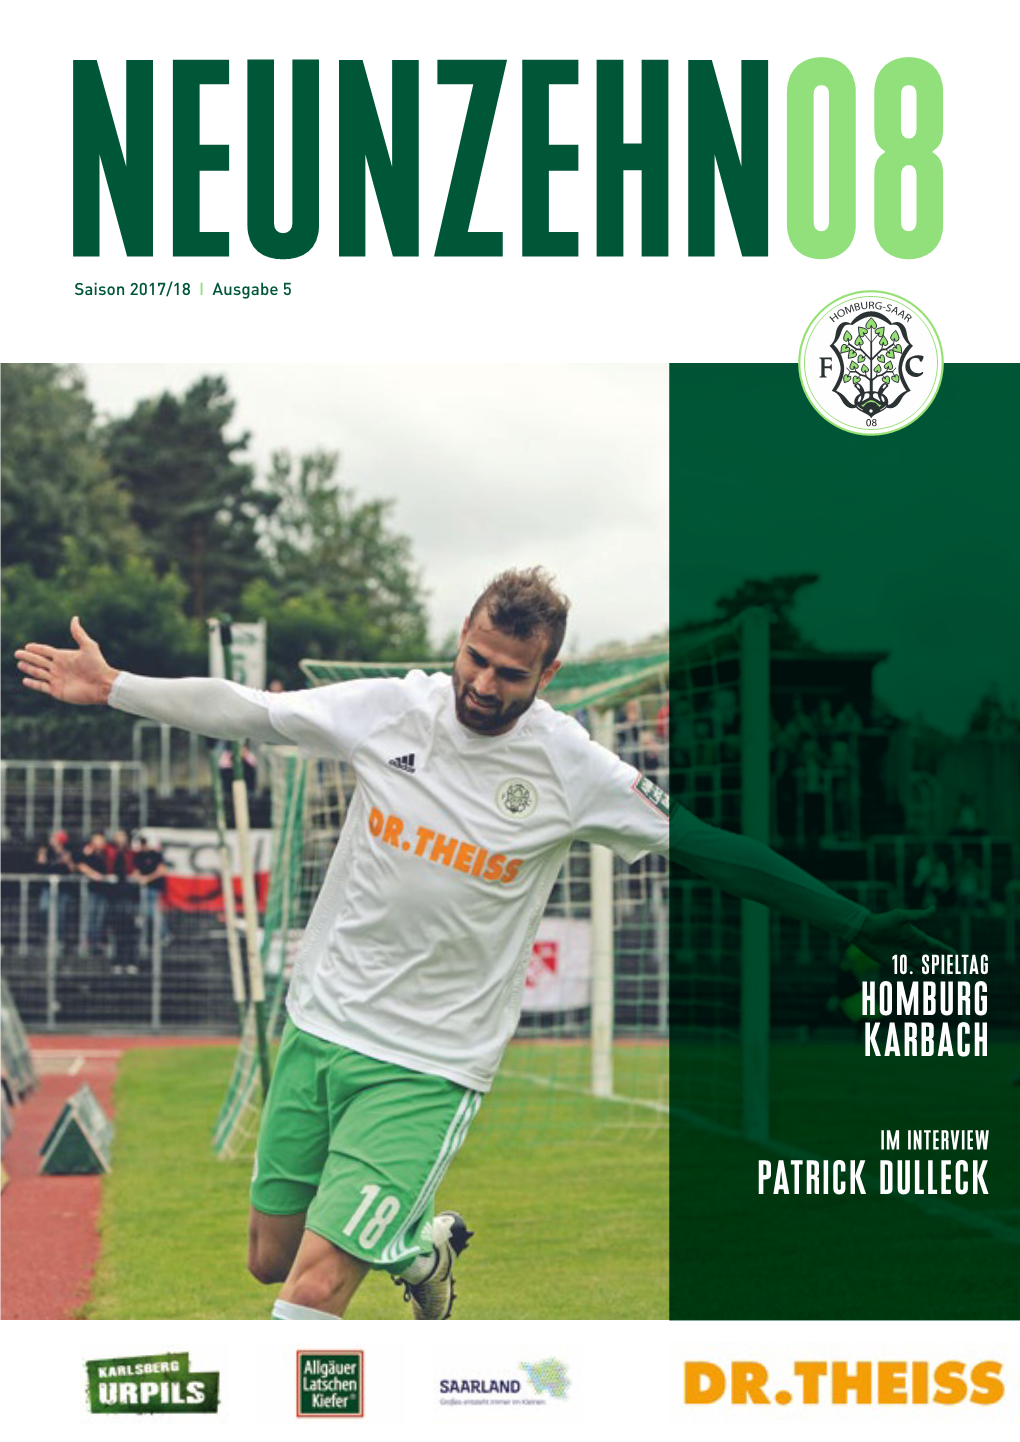 FC 08 Homburg – FC Karbach